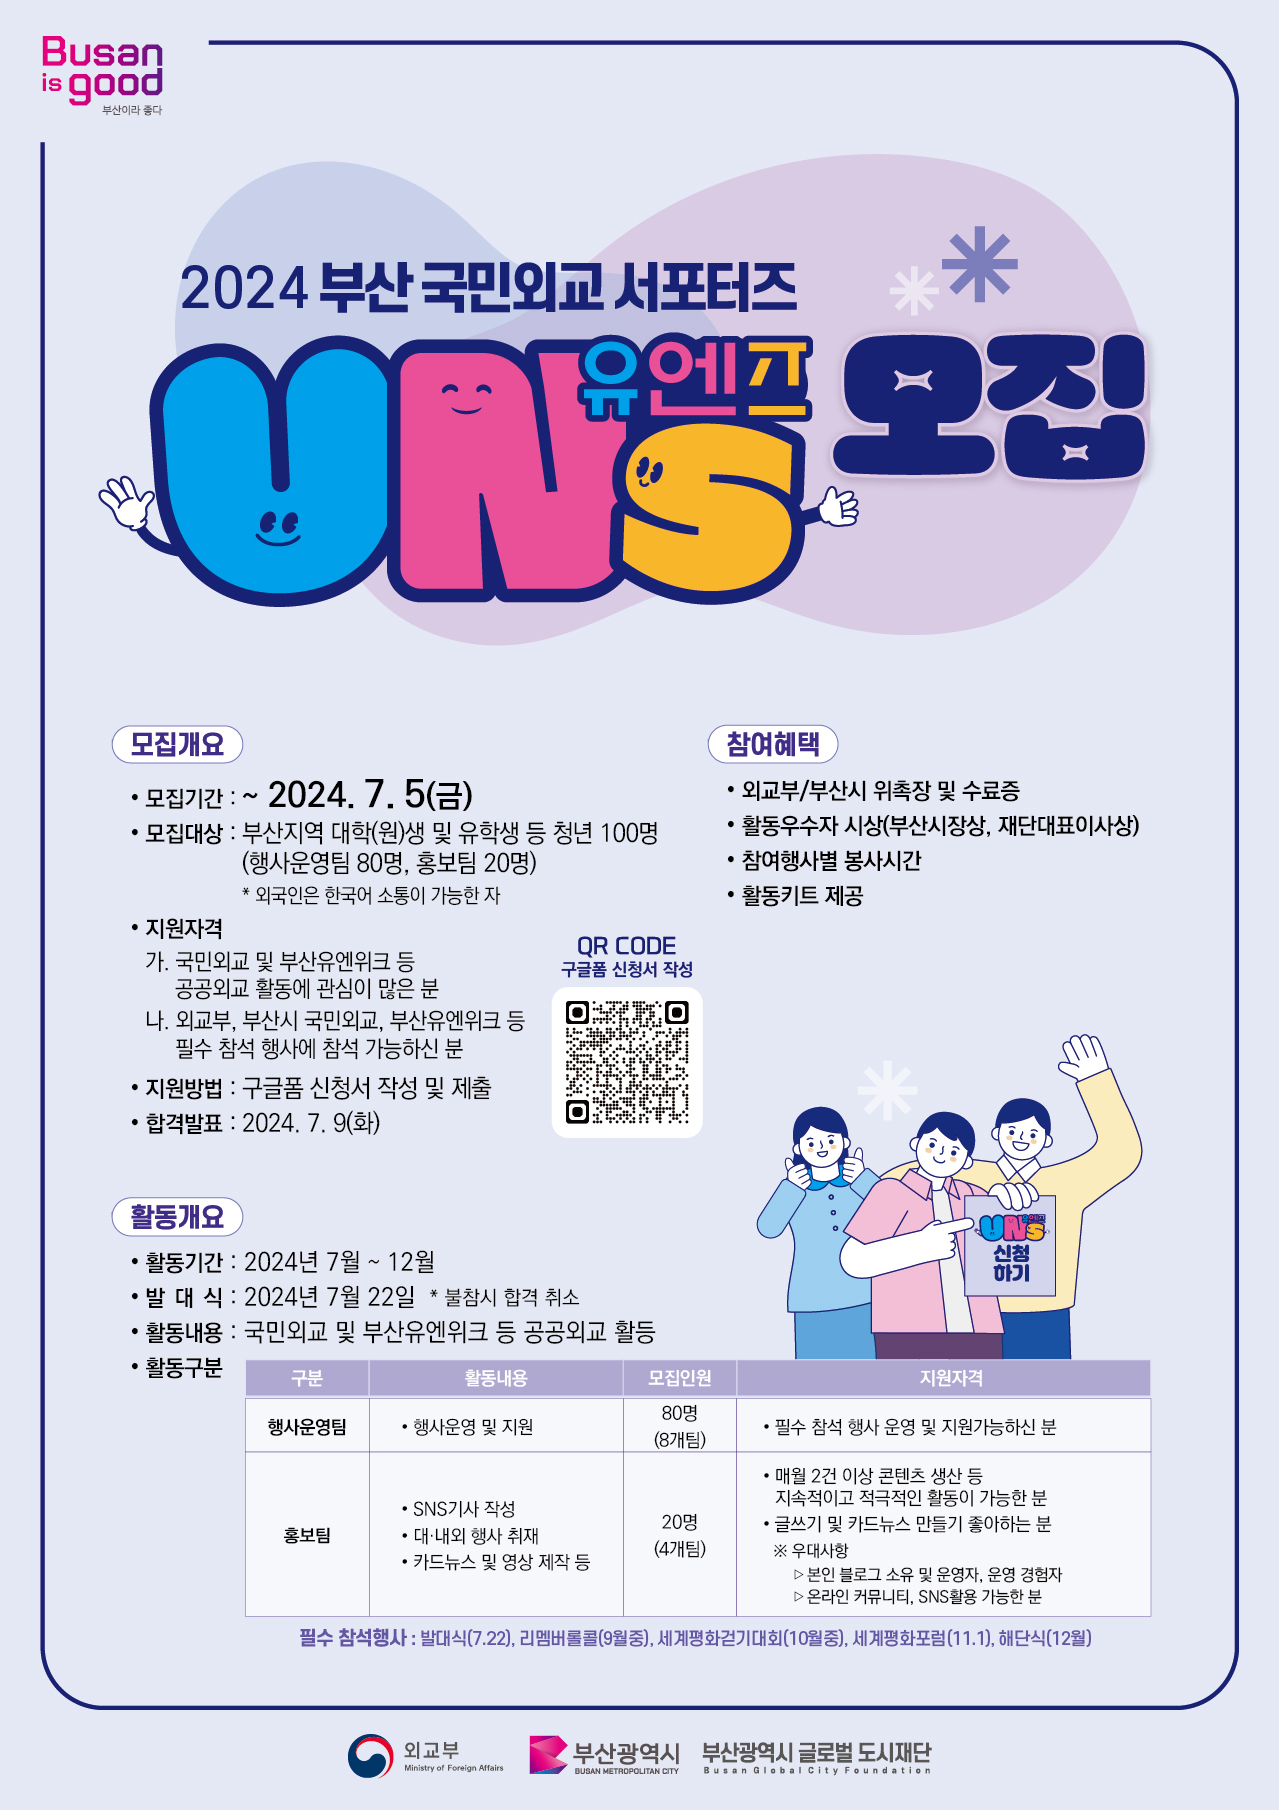 2024 부산 국민외교 서포터즈 유엔즈(UNs) 모집